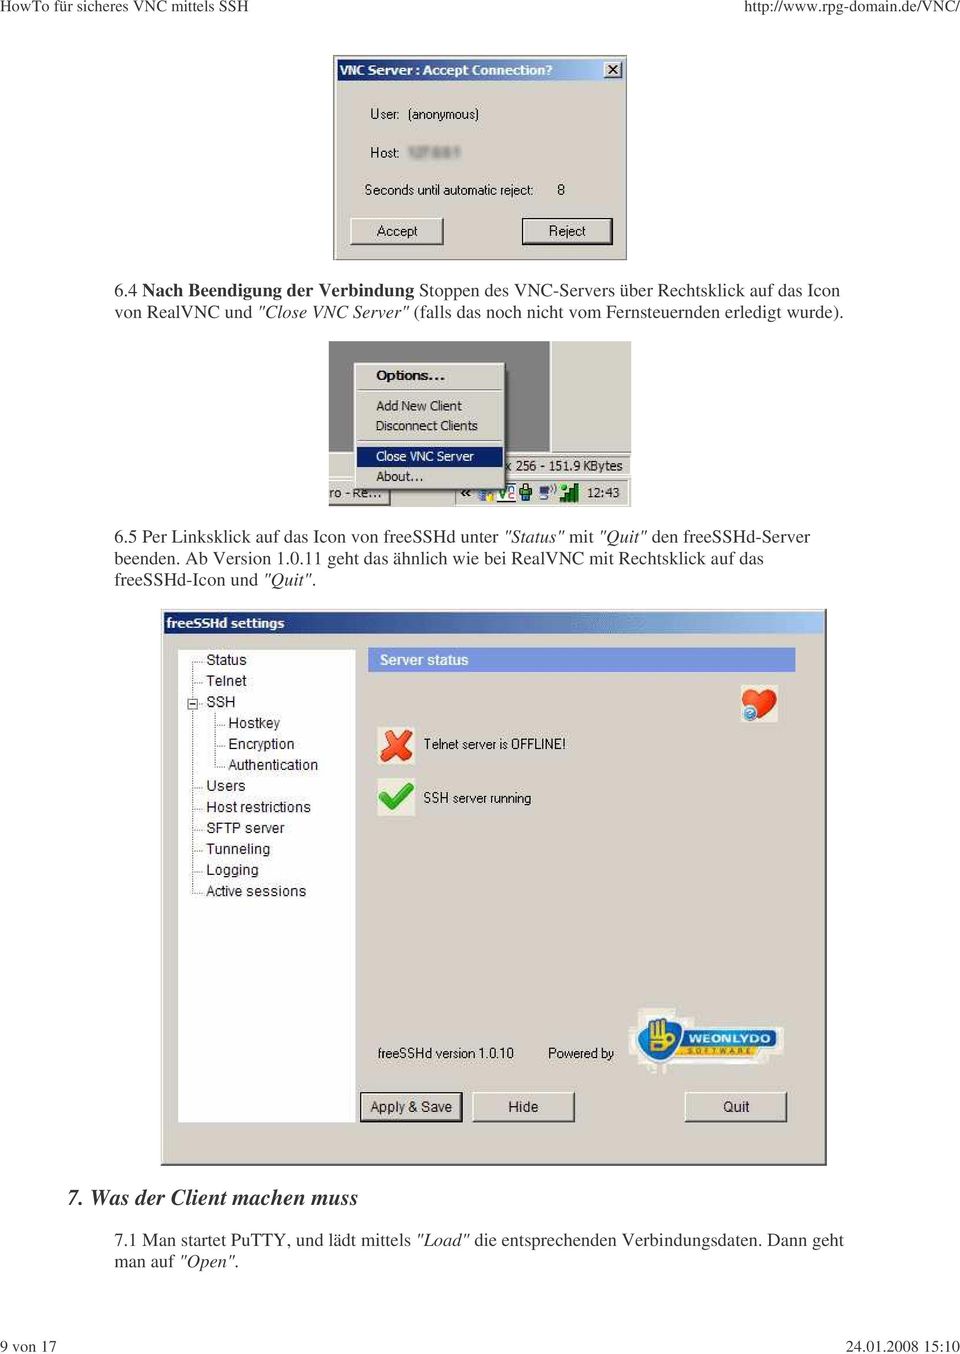 5 Per Linksklick auf das Icon von freesshd unter "Status" mit "Quit" den freesshd-server beenden. Ab Version 1.0.